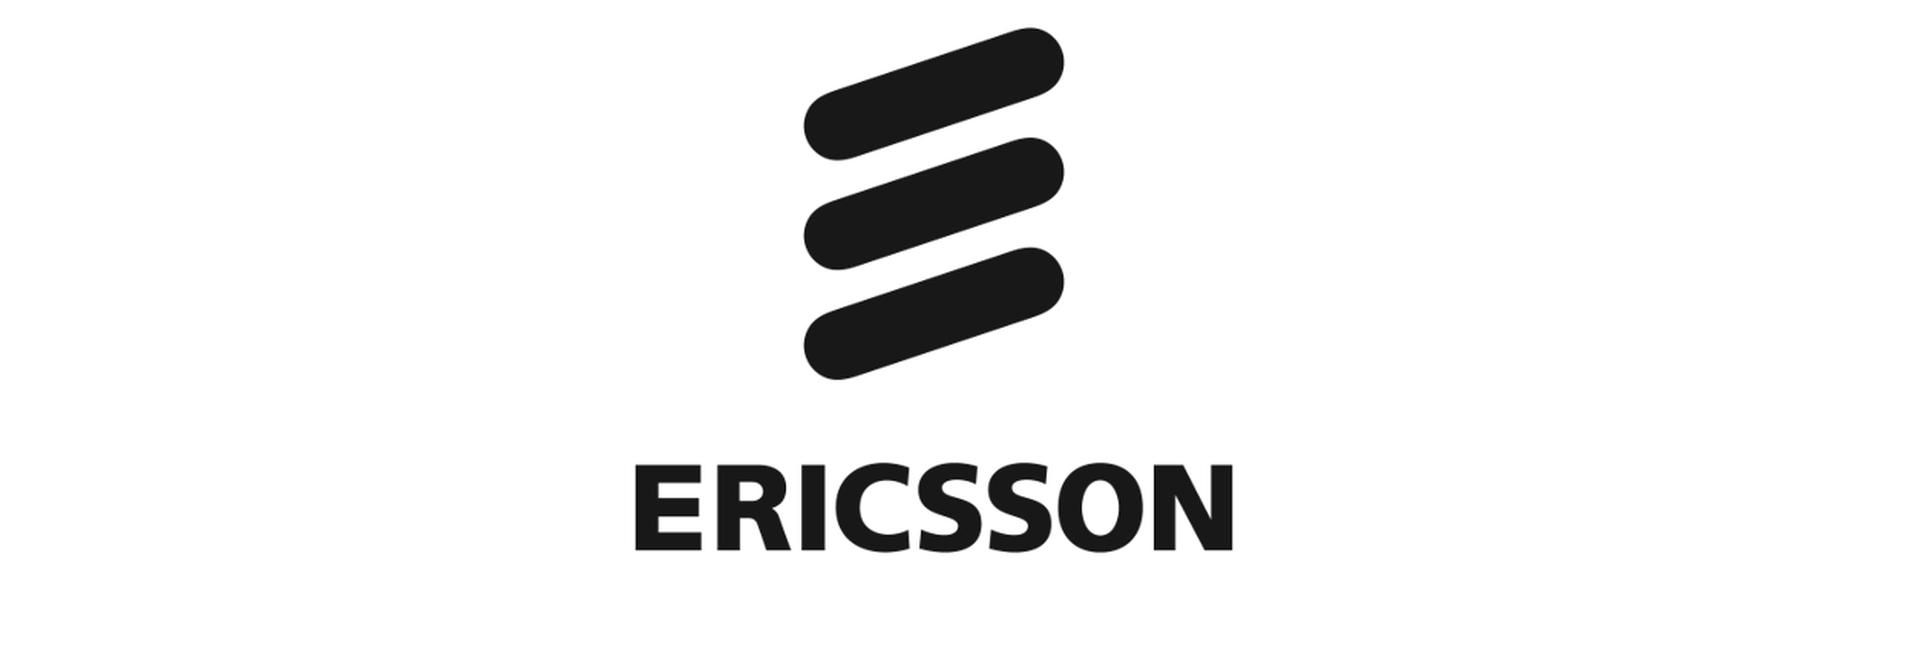 Az Ericsson budapesti központjában fejleszti felhőalapú IMS rendszerét - VIDEÓRIPORT